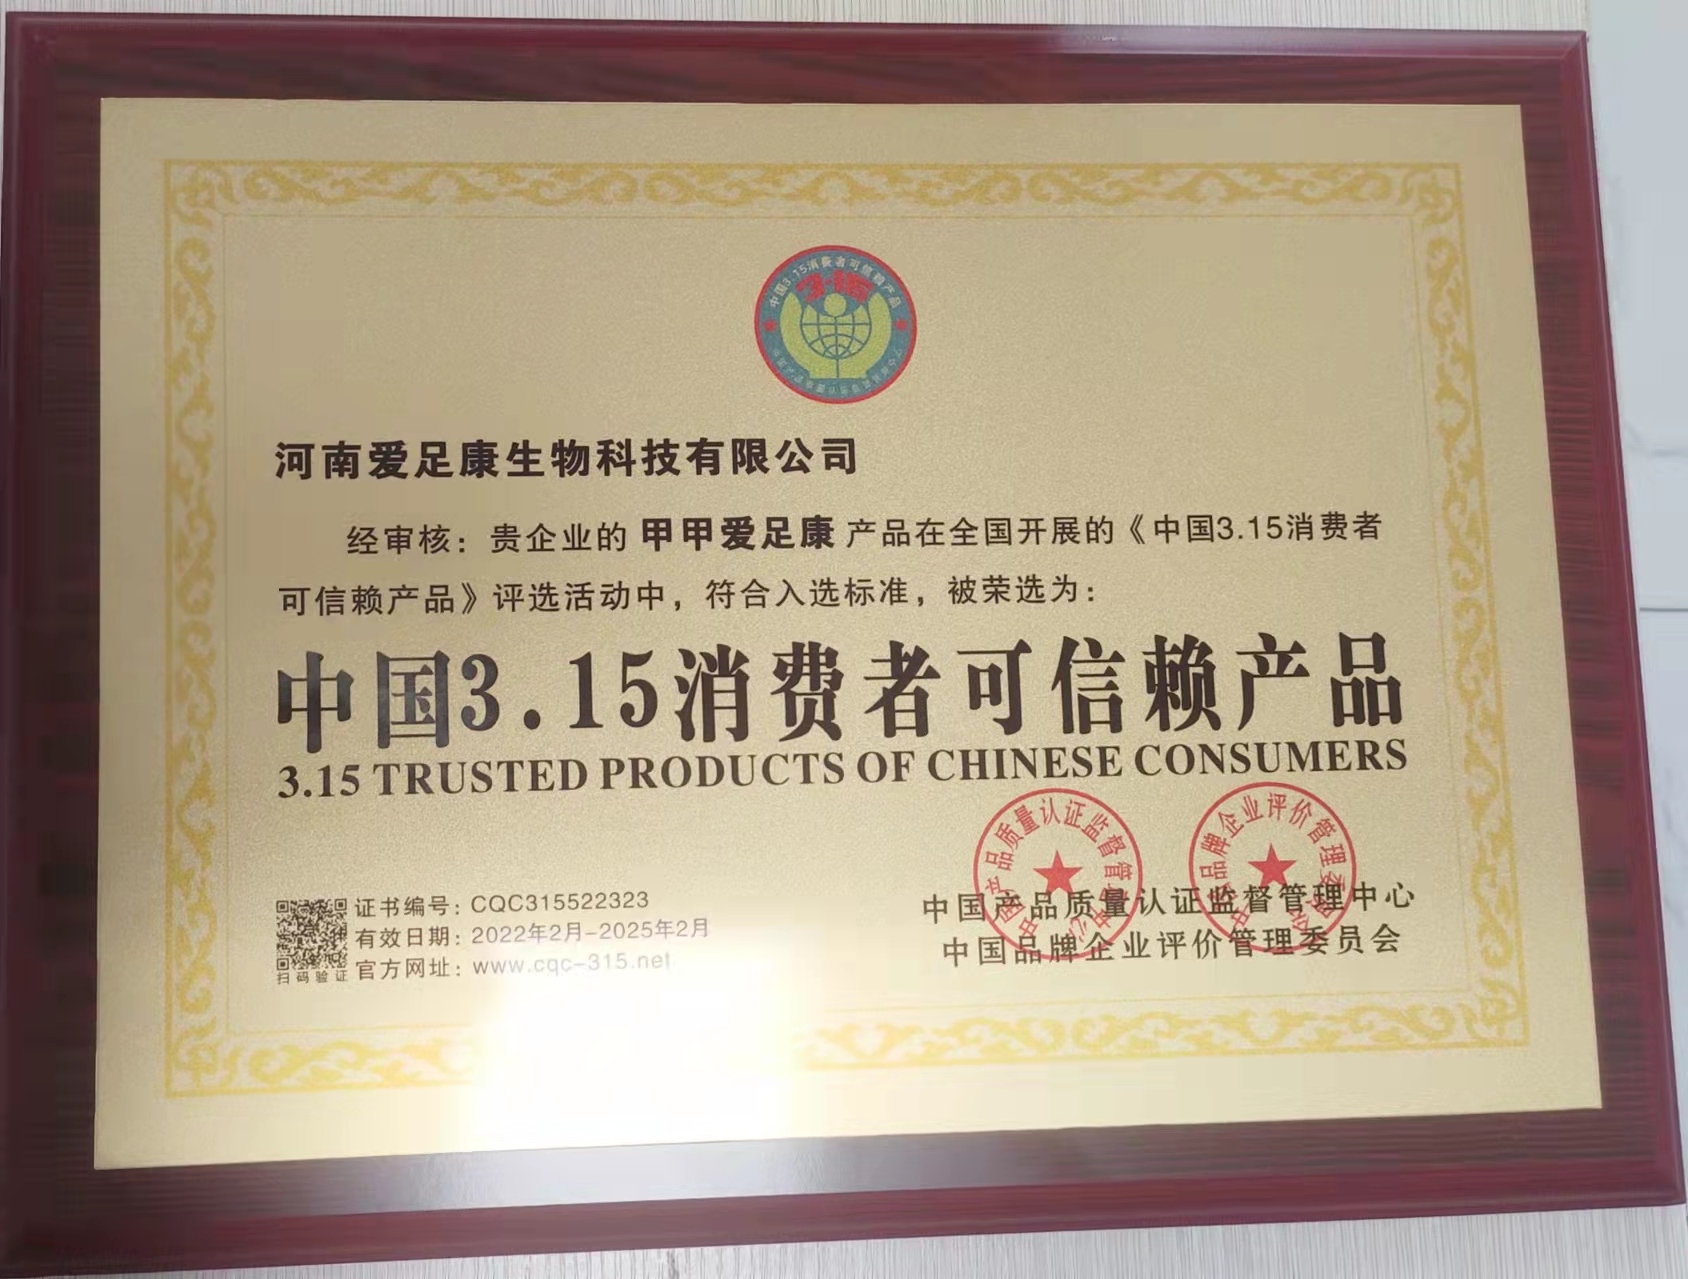 祝贺公司获得:中国315消费者可信赖产品荣誉称号